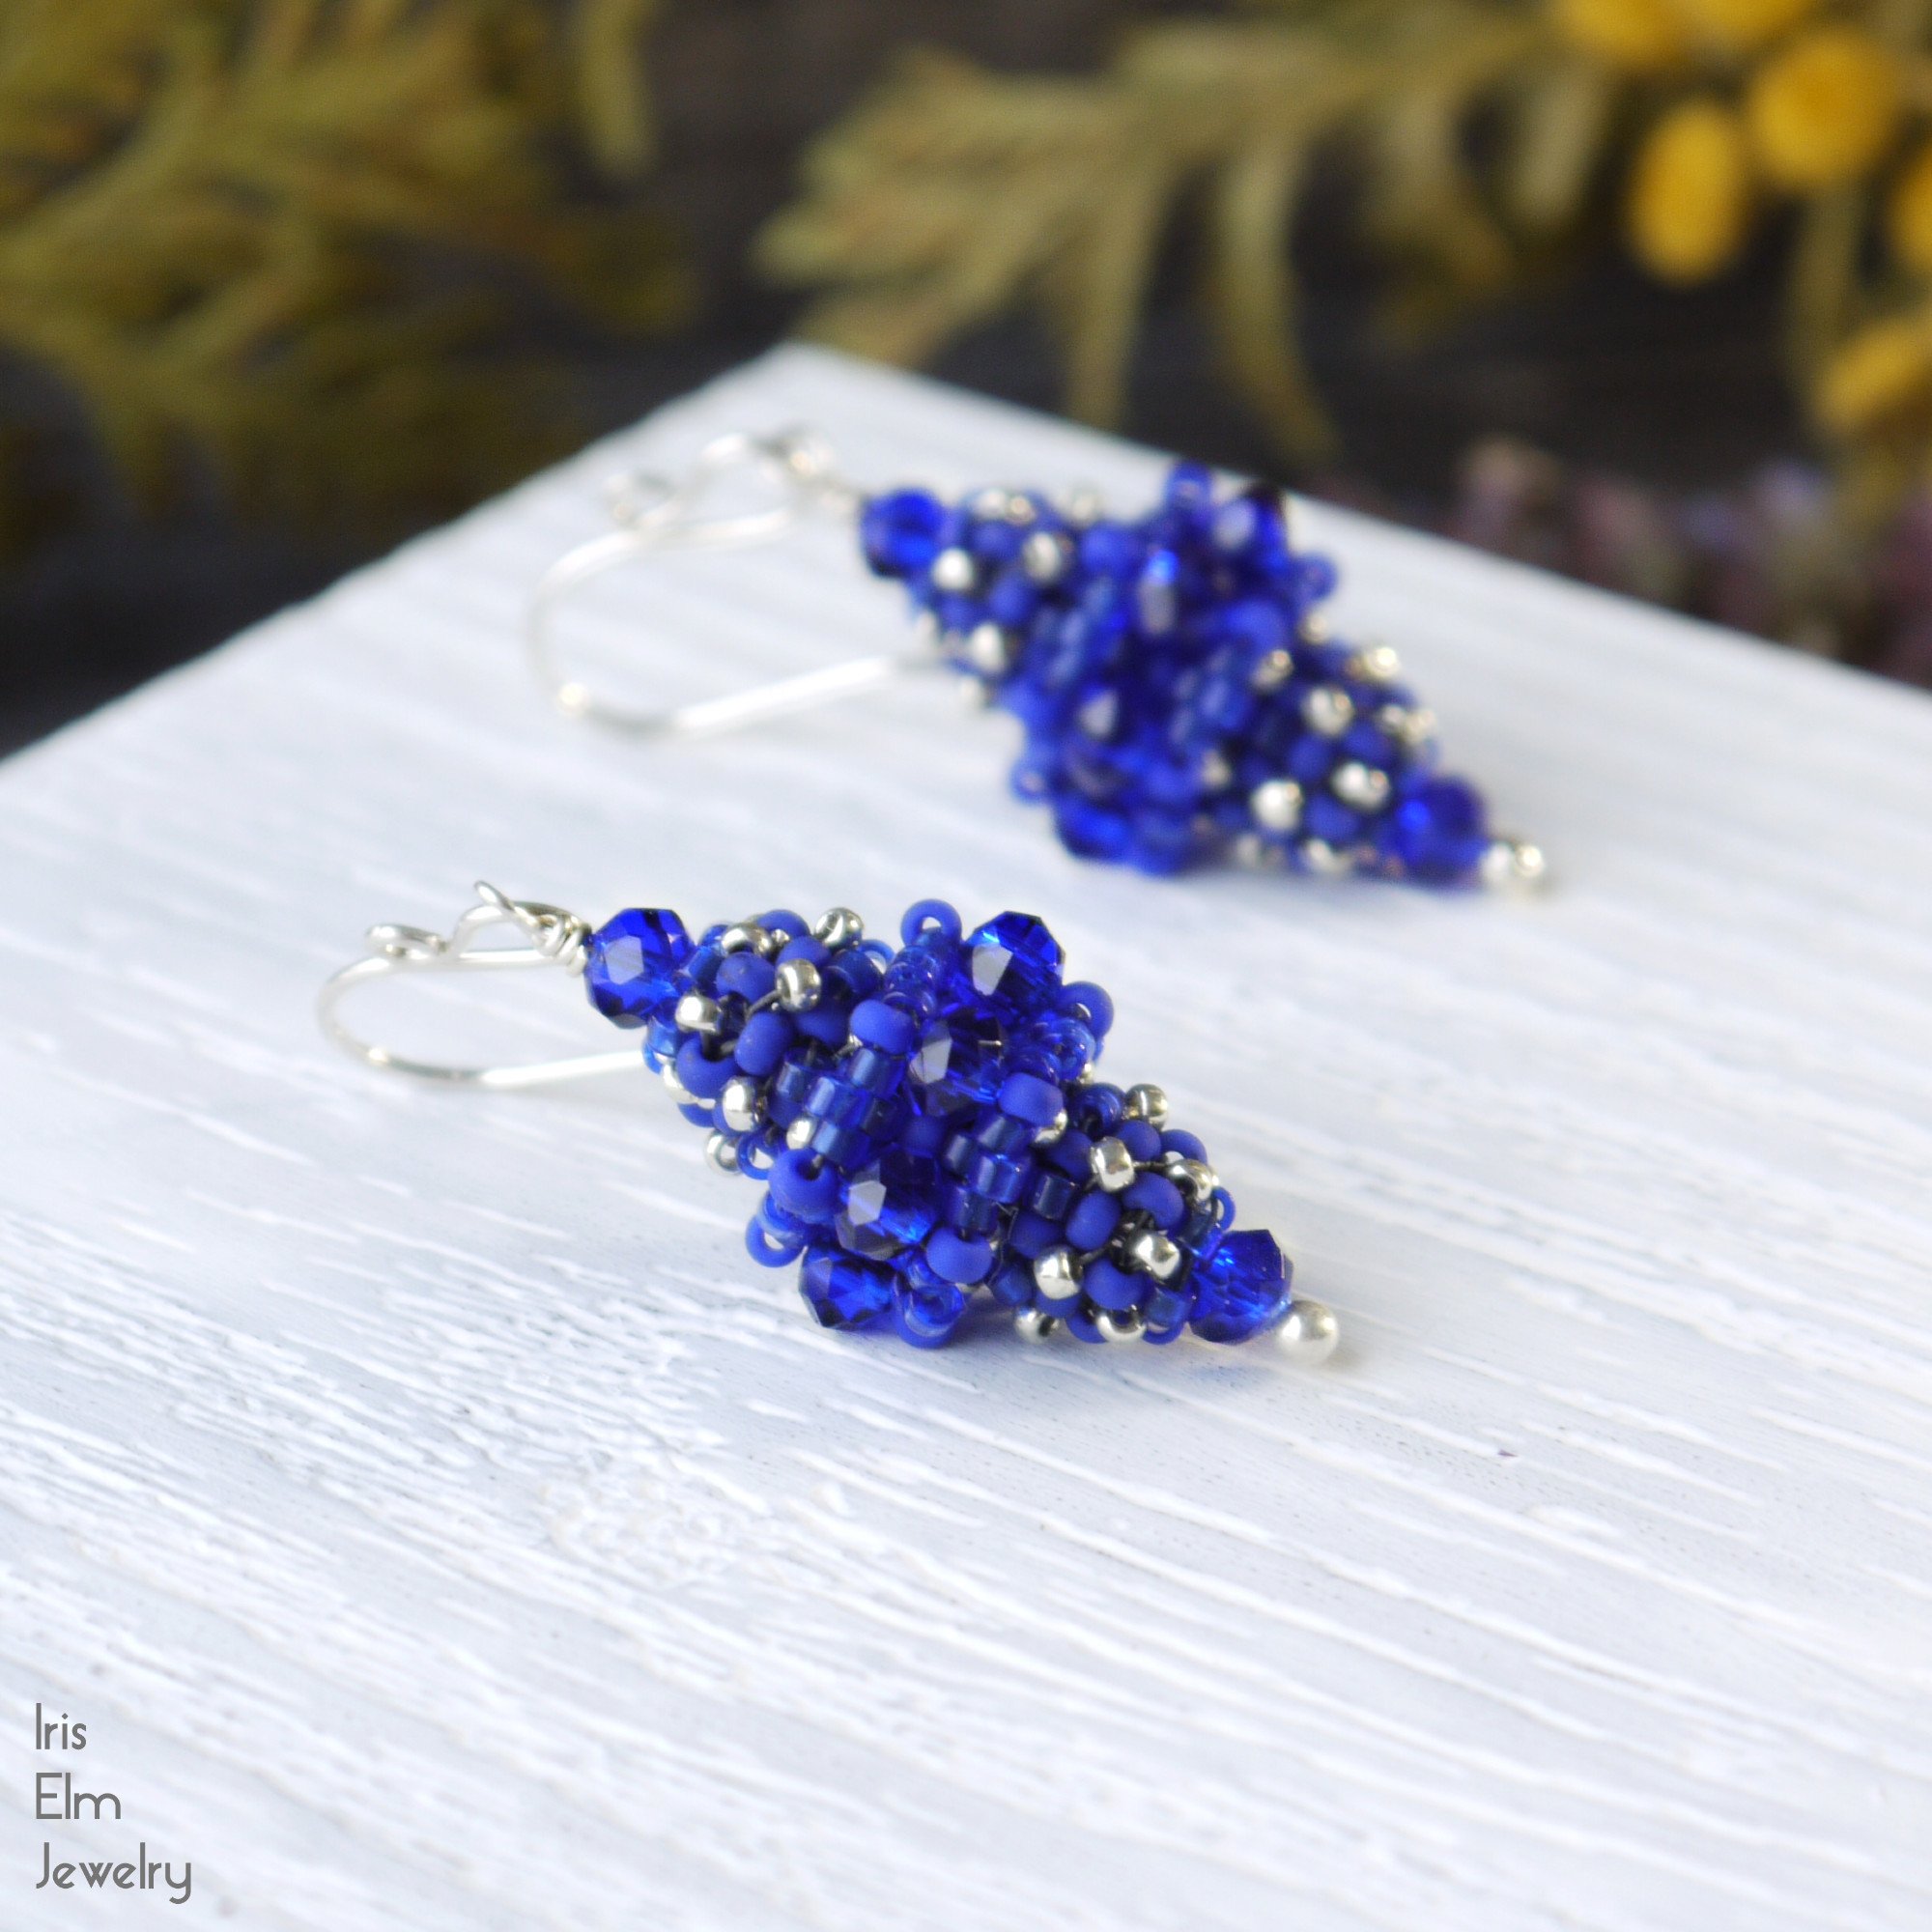 Details about   Cobalt Blue Glass Beads 71520 